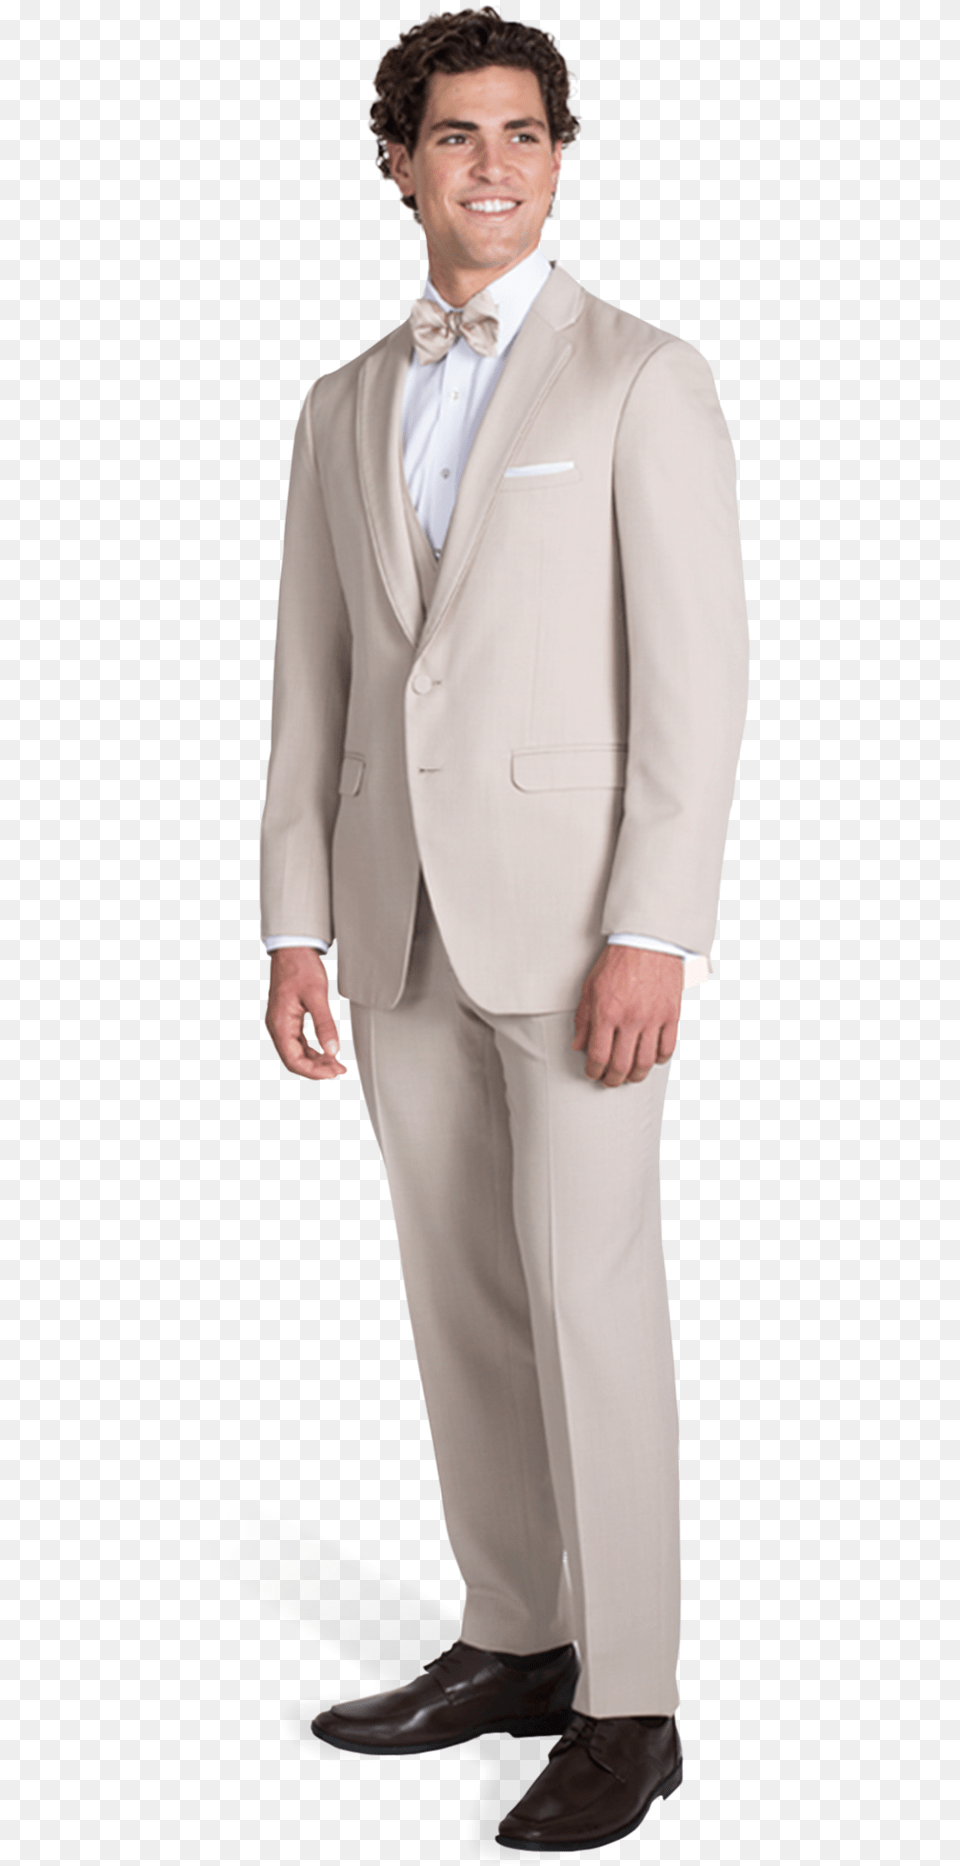 Tan Notch Lapel Suit Suit, Tuxedo, Clothing, Formal Wear, Coat Free Png Download